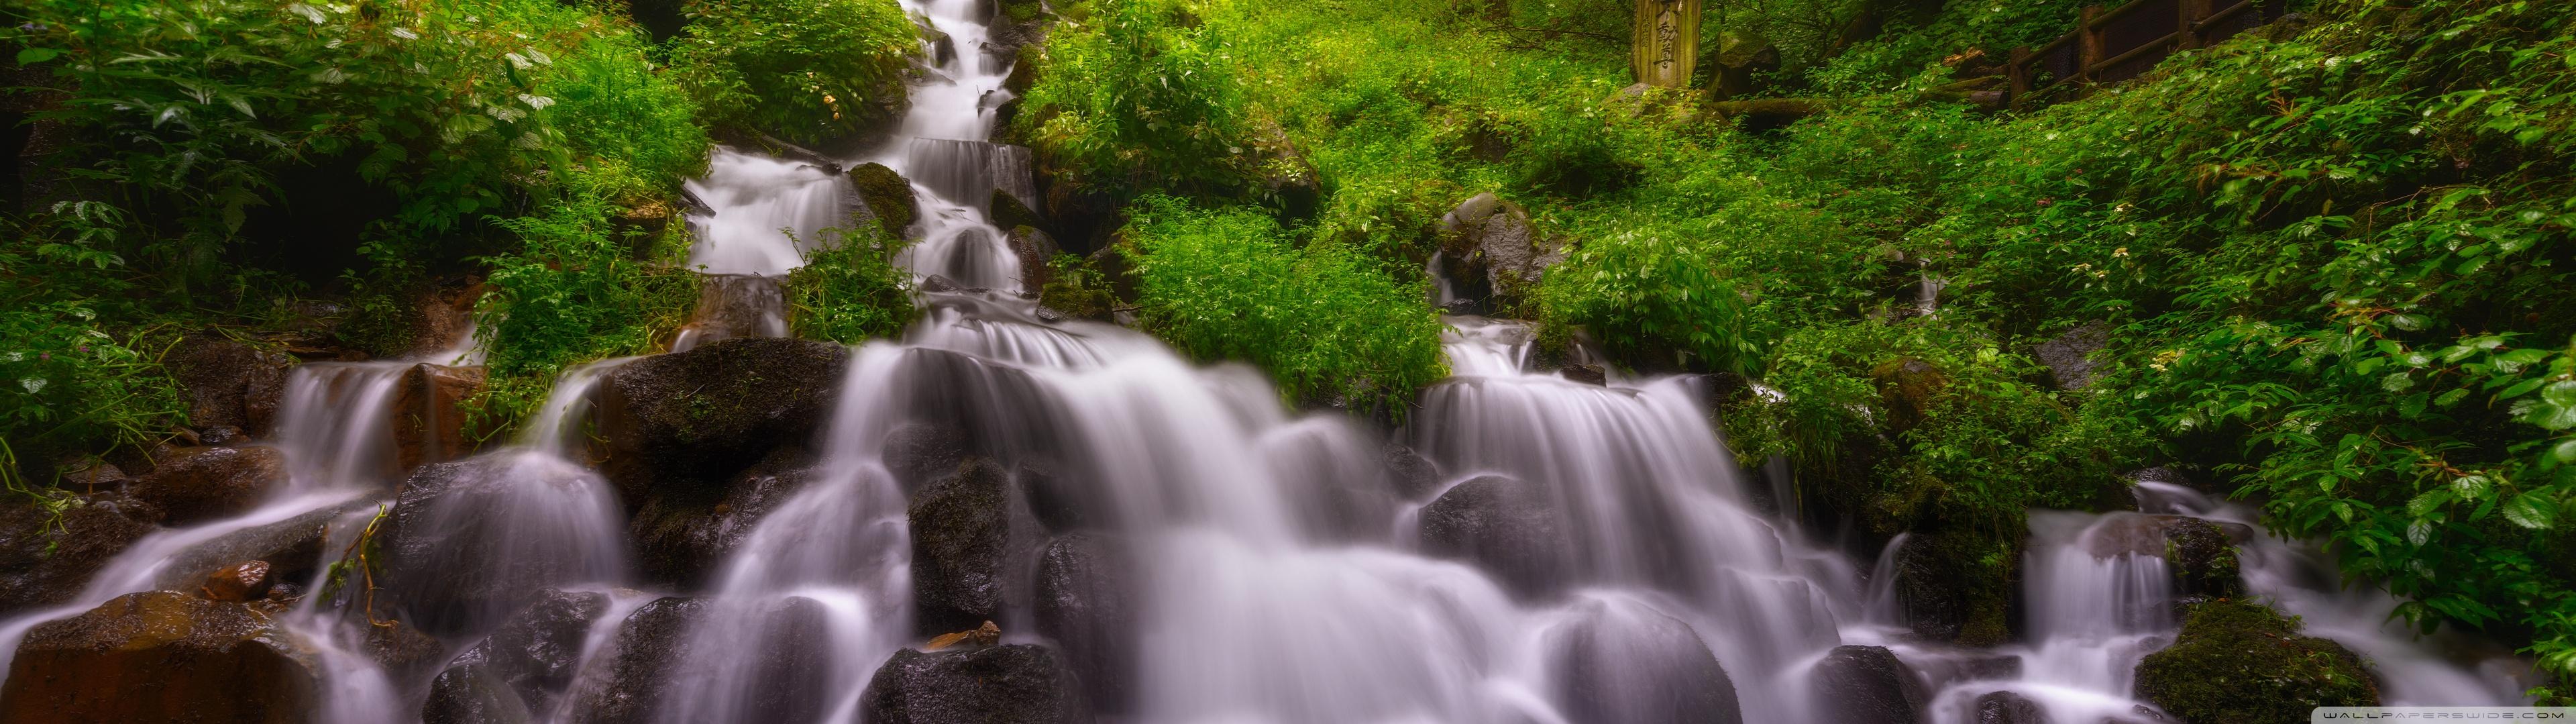 Forest Waterfall Summer Ultra HD Desktop Background Wallpaper For